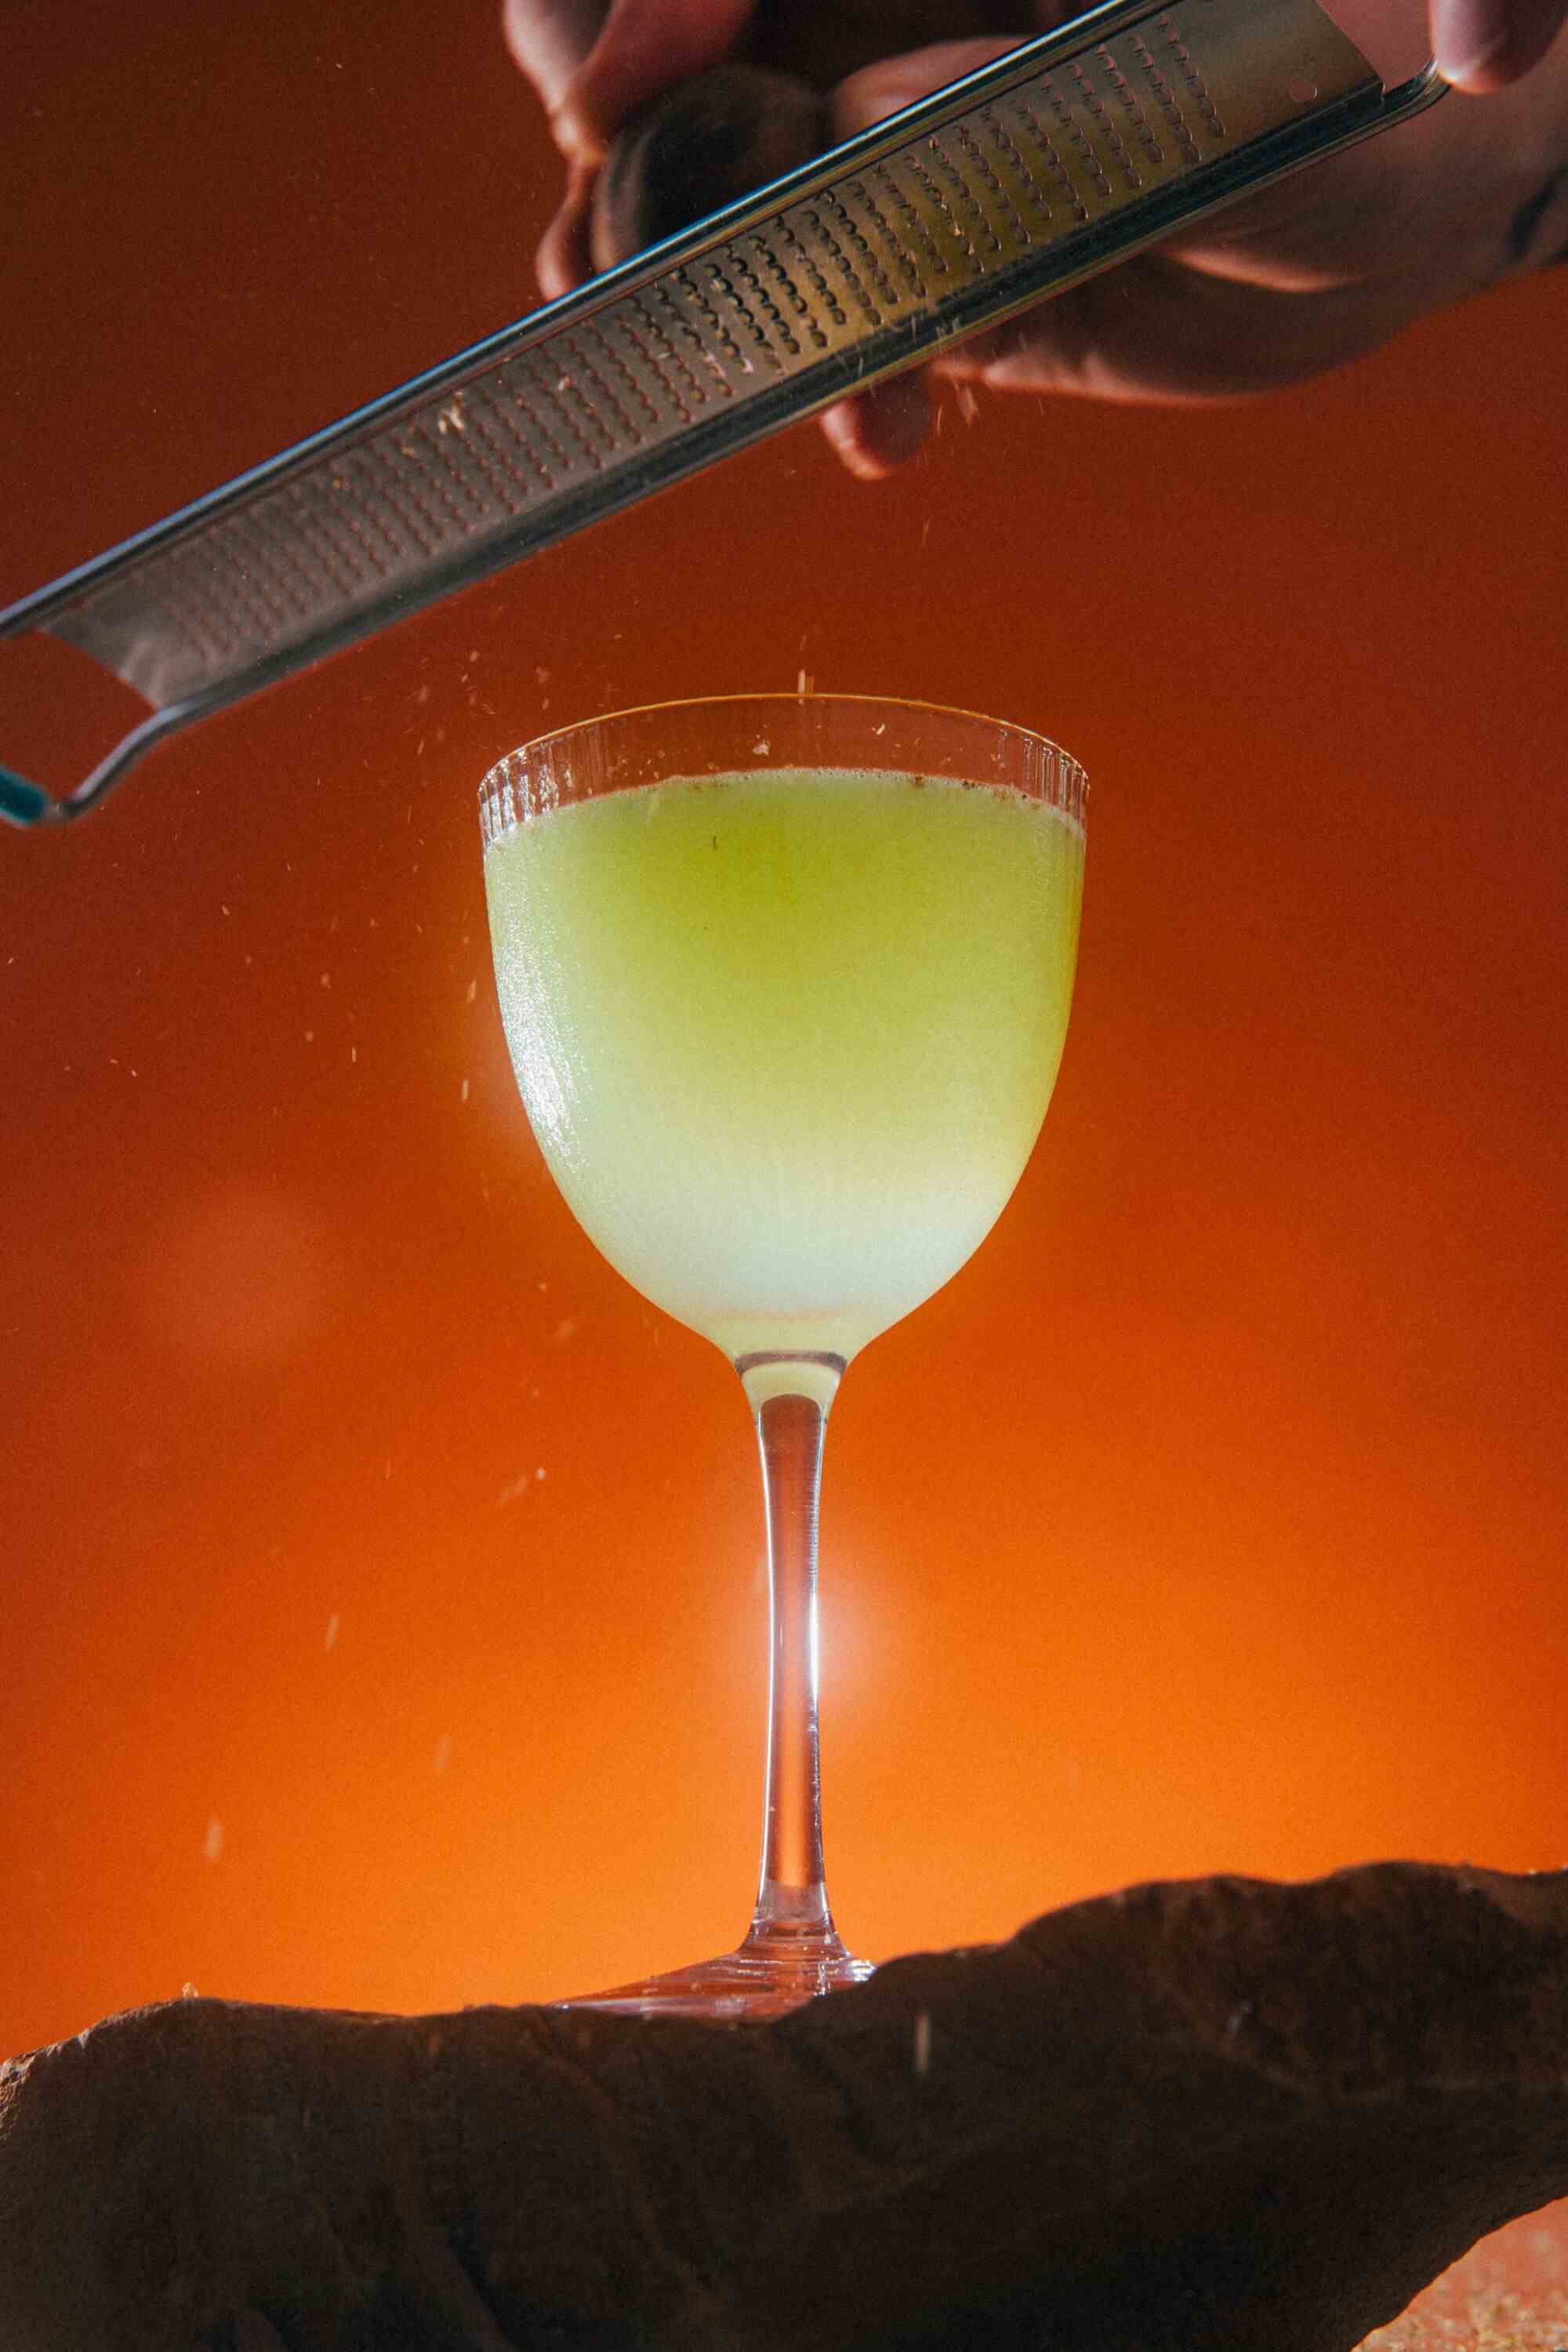 Ein grüner Cocktail leuchtet vor einem orangefarbenen Hintergrund.  Darüber reibt eine Hand die Schale einer schwarzen Limette in das Getränk.